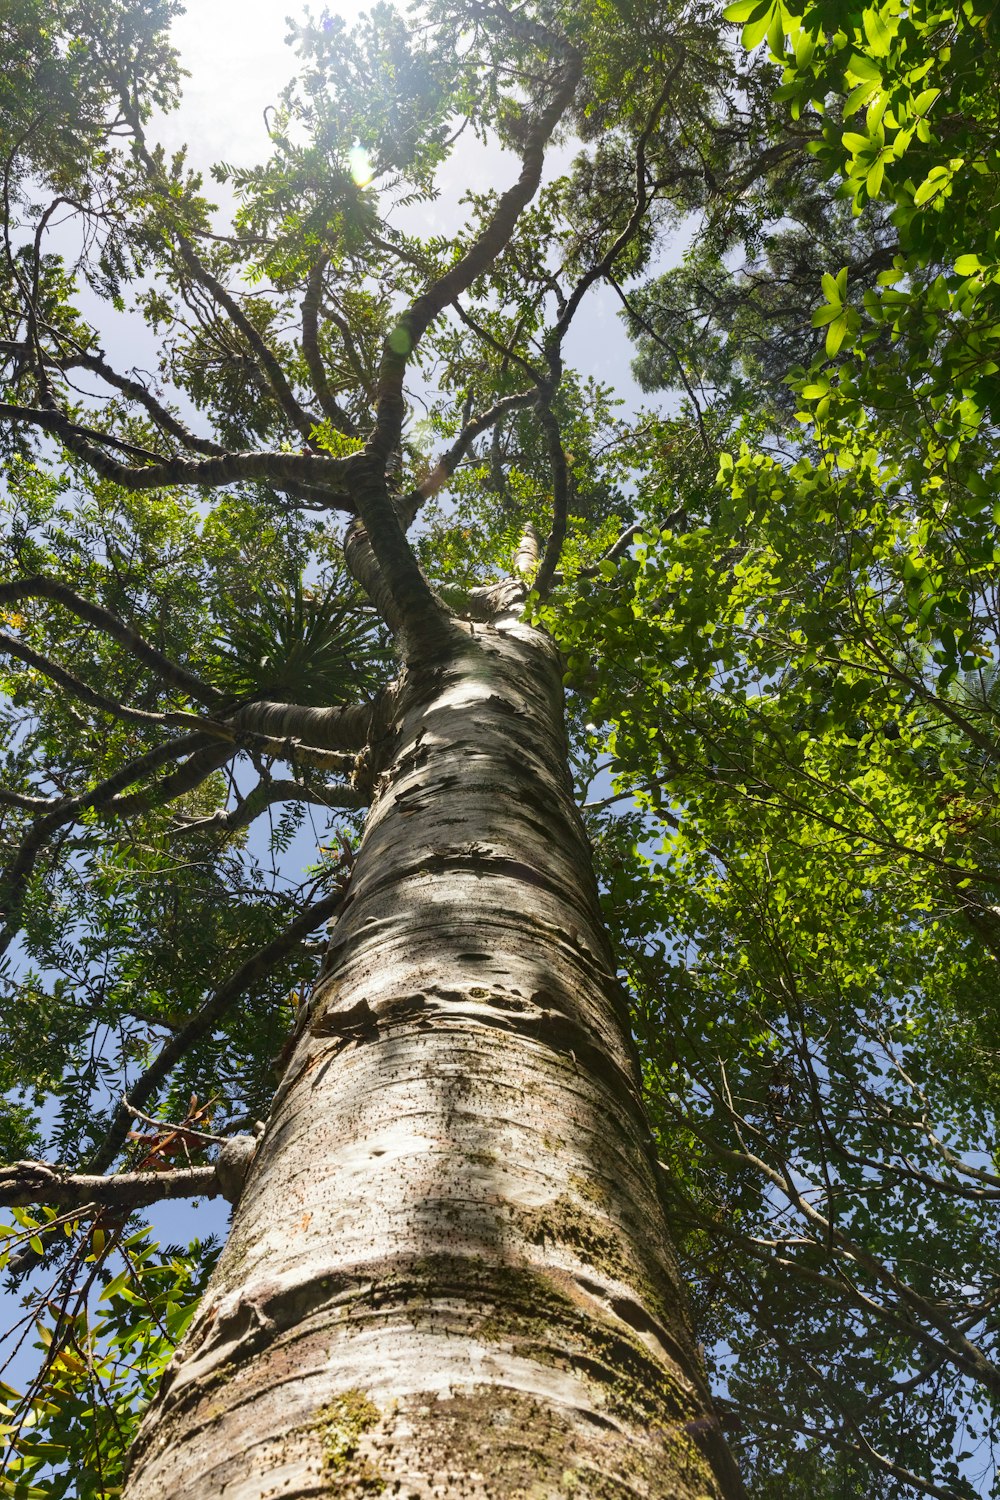 Low-Angle-Fotografie eines grünblättrigen Baumes